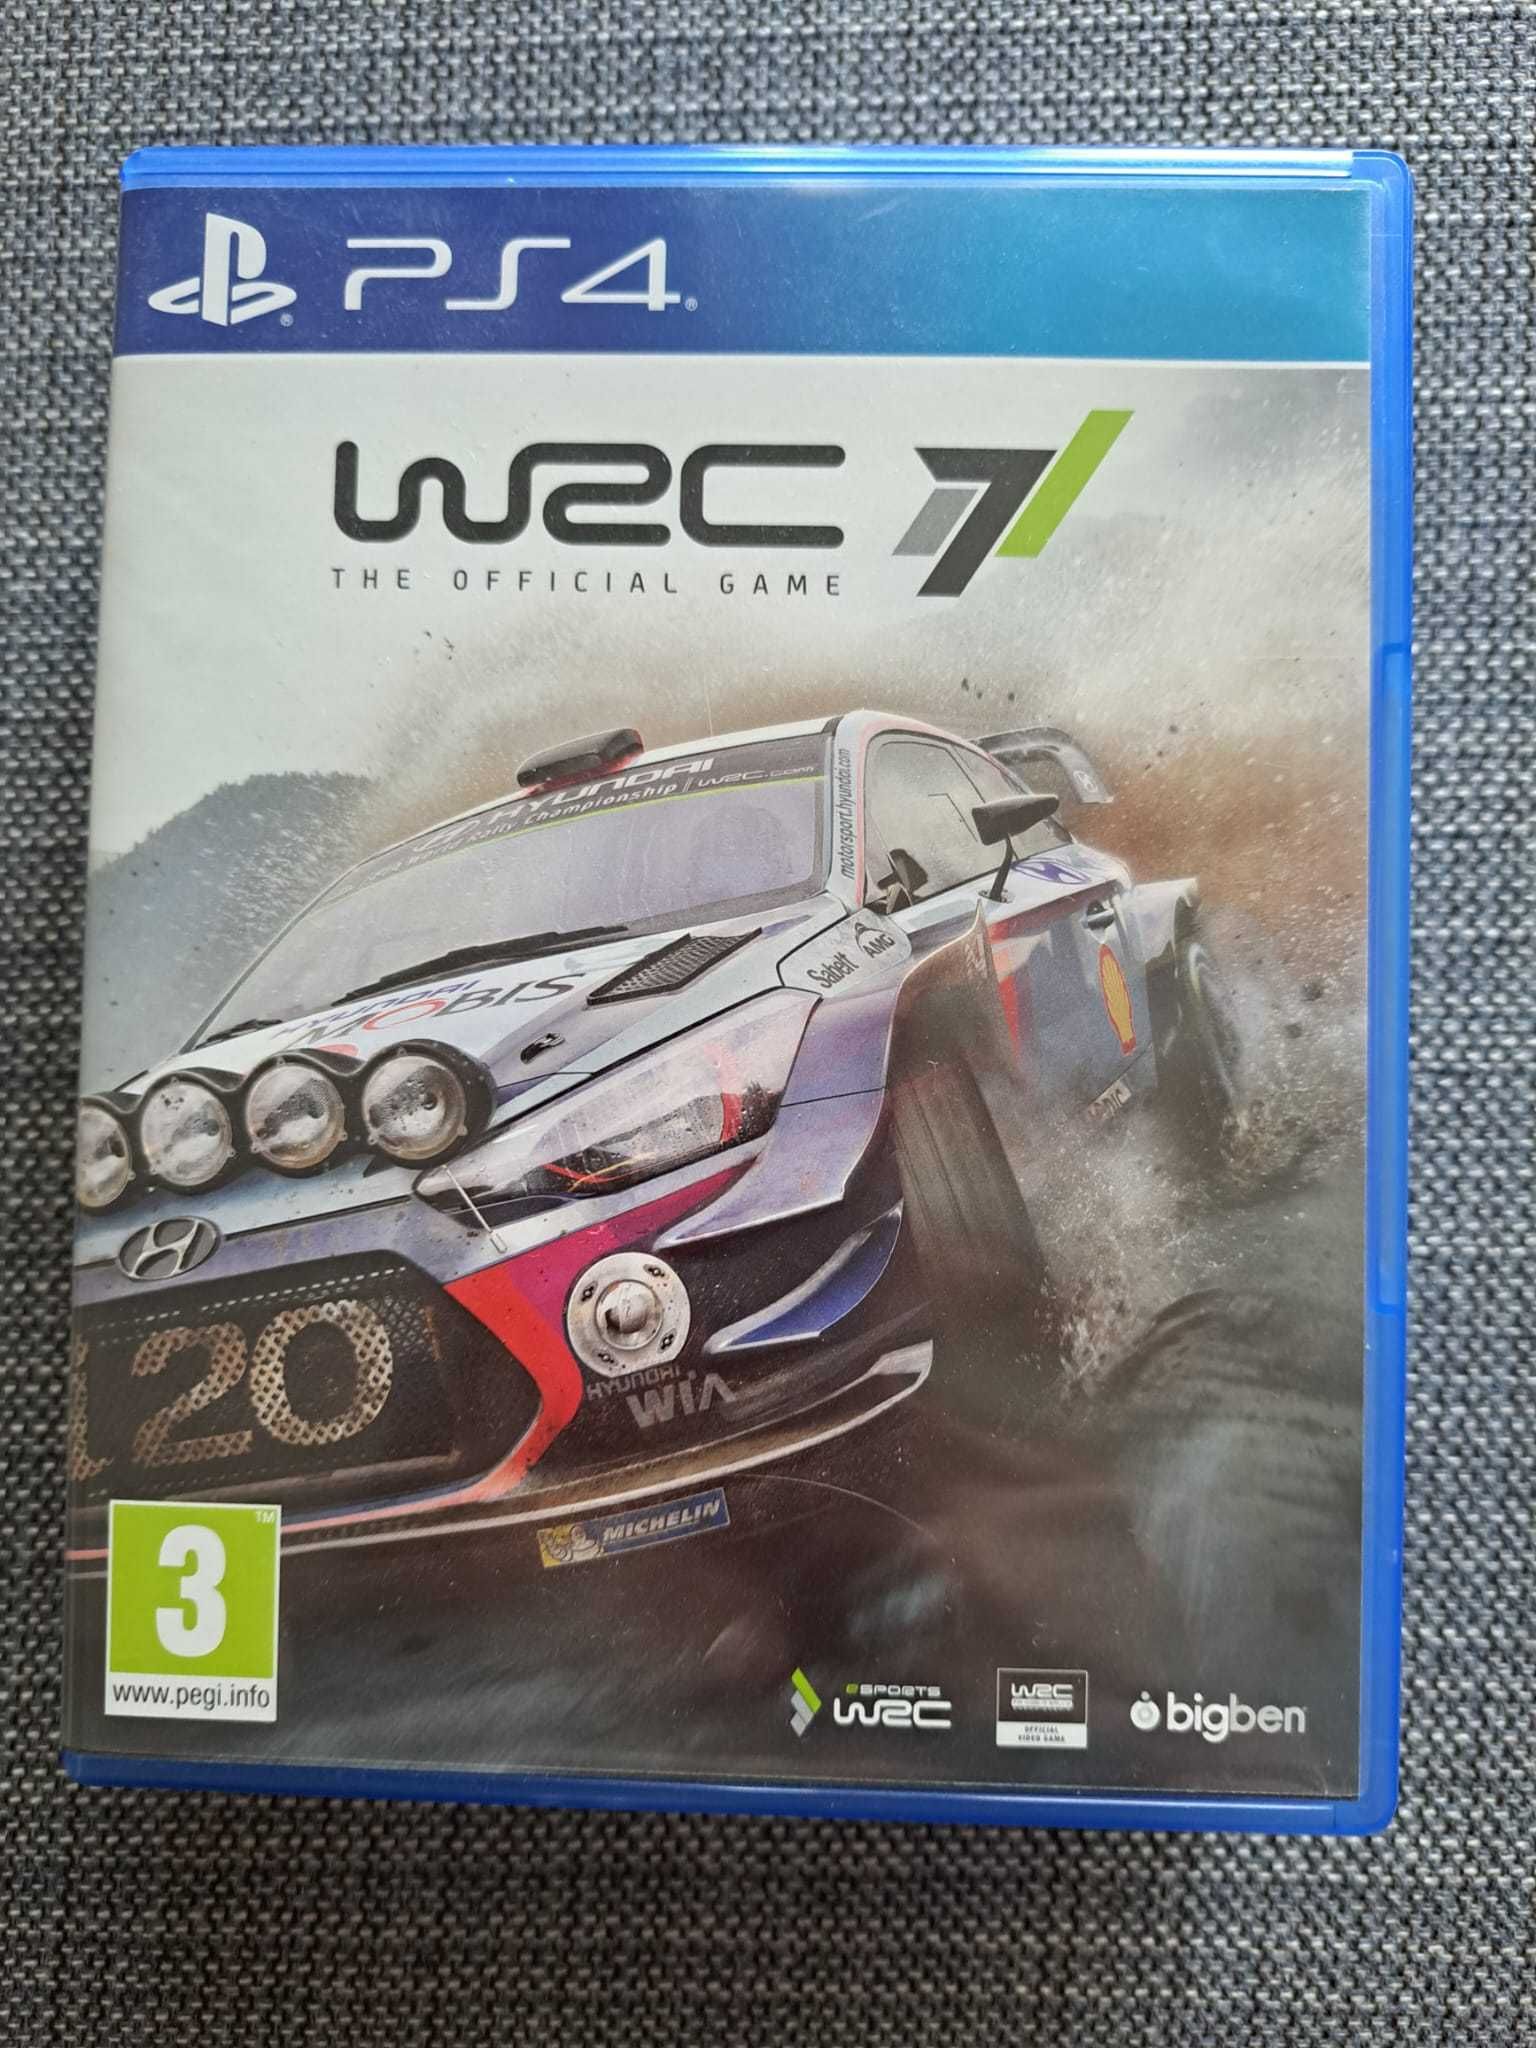 Pack Jogos PS4 - Fifa 18 + WRC + Rocket League